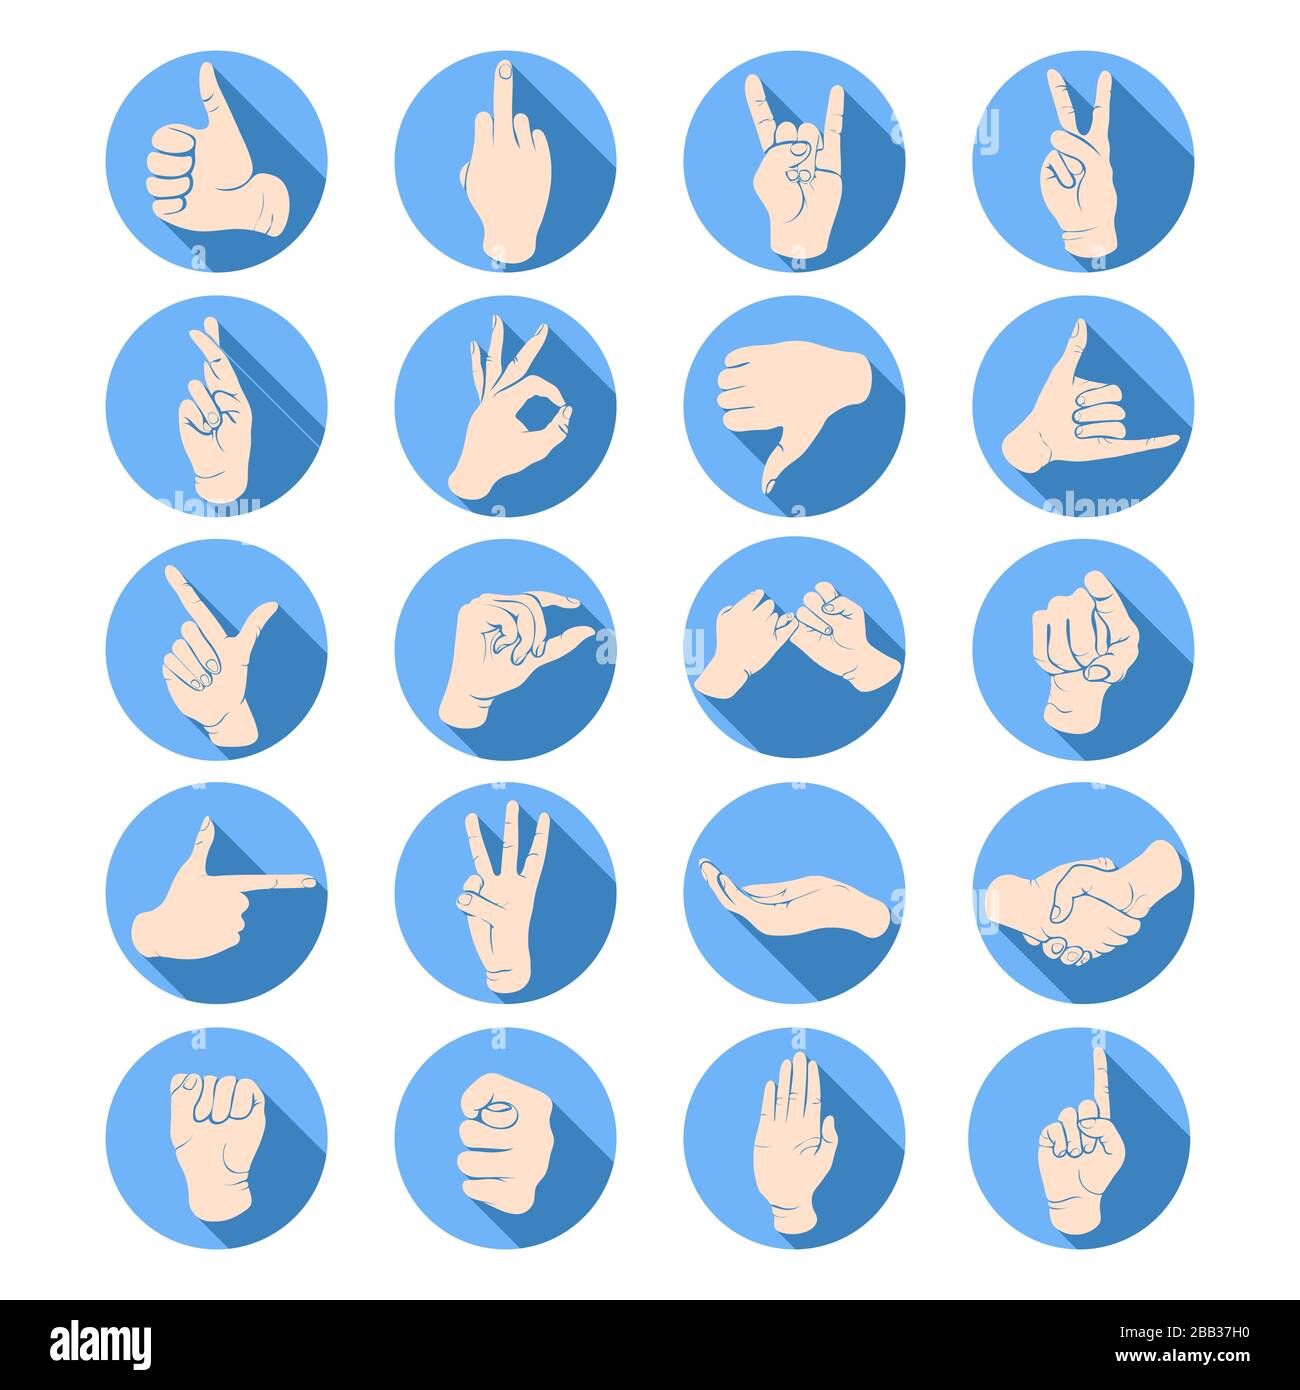 Gesti delle mani, segni delle dita, set di icone della lingua dei segni, stencil, logo, silhouette. Disegno di polso, mani che mostrano vari simboli in una cornice rotonda, isola Illustrazione Vettoriale